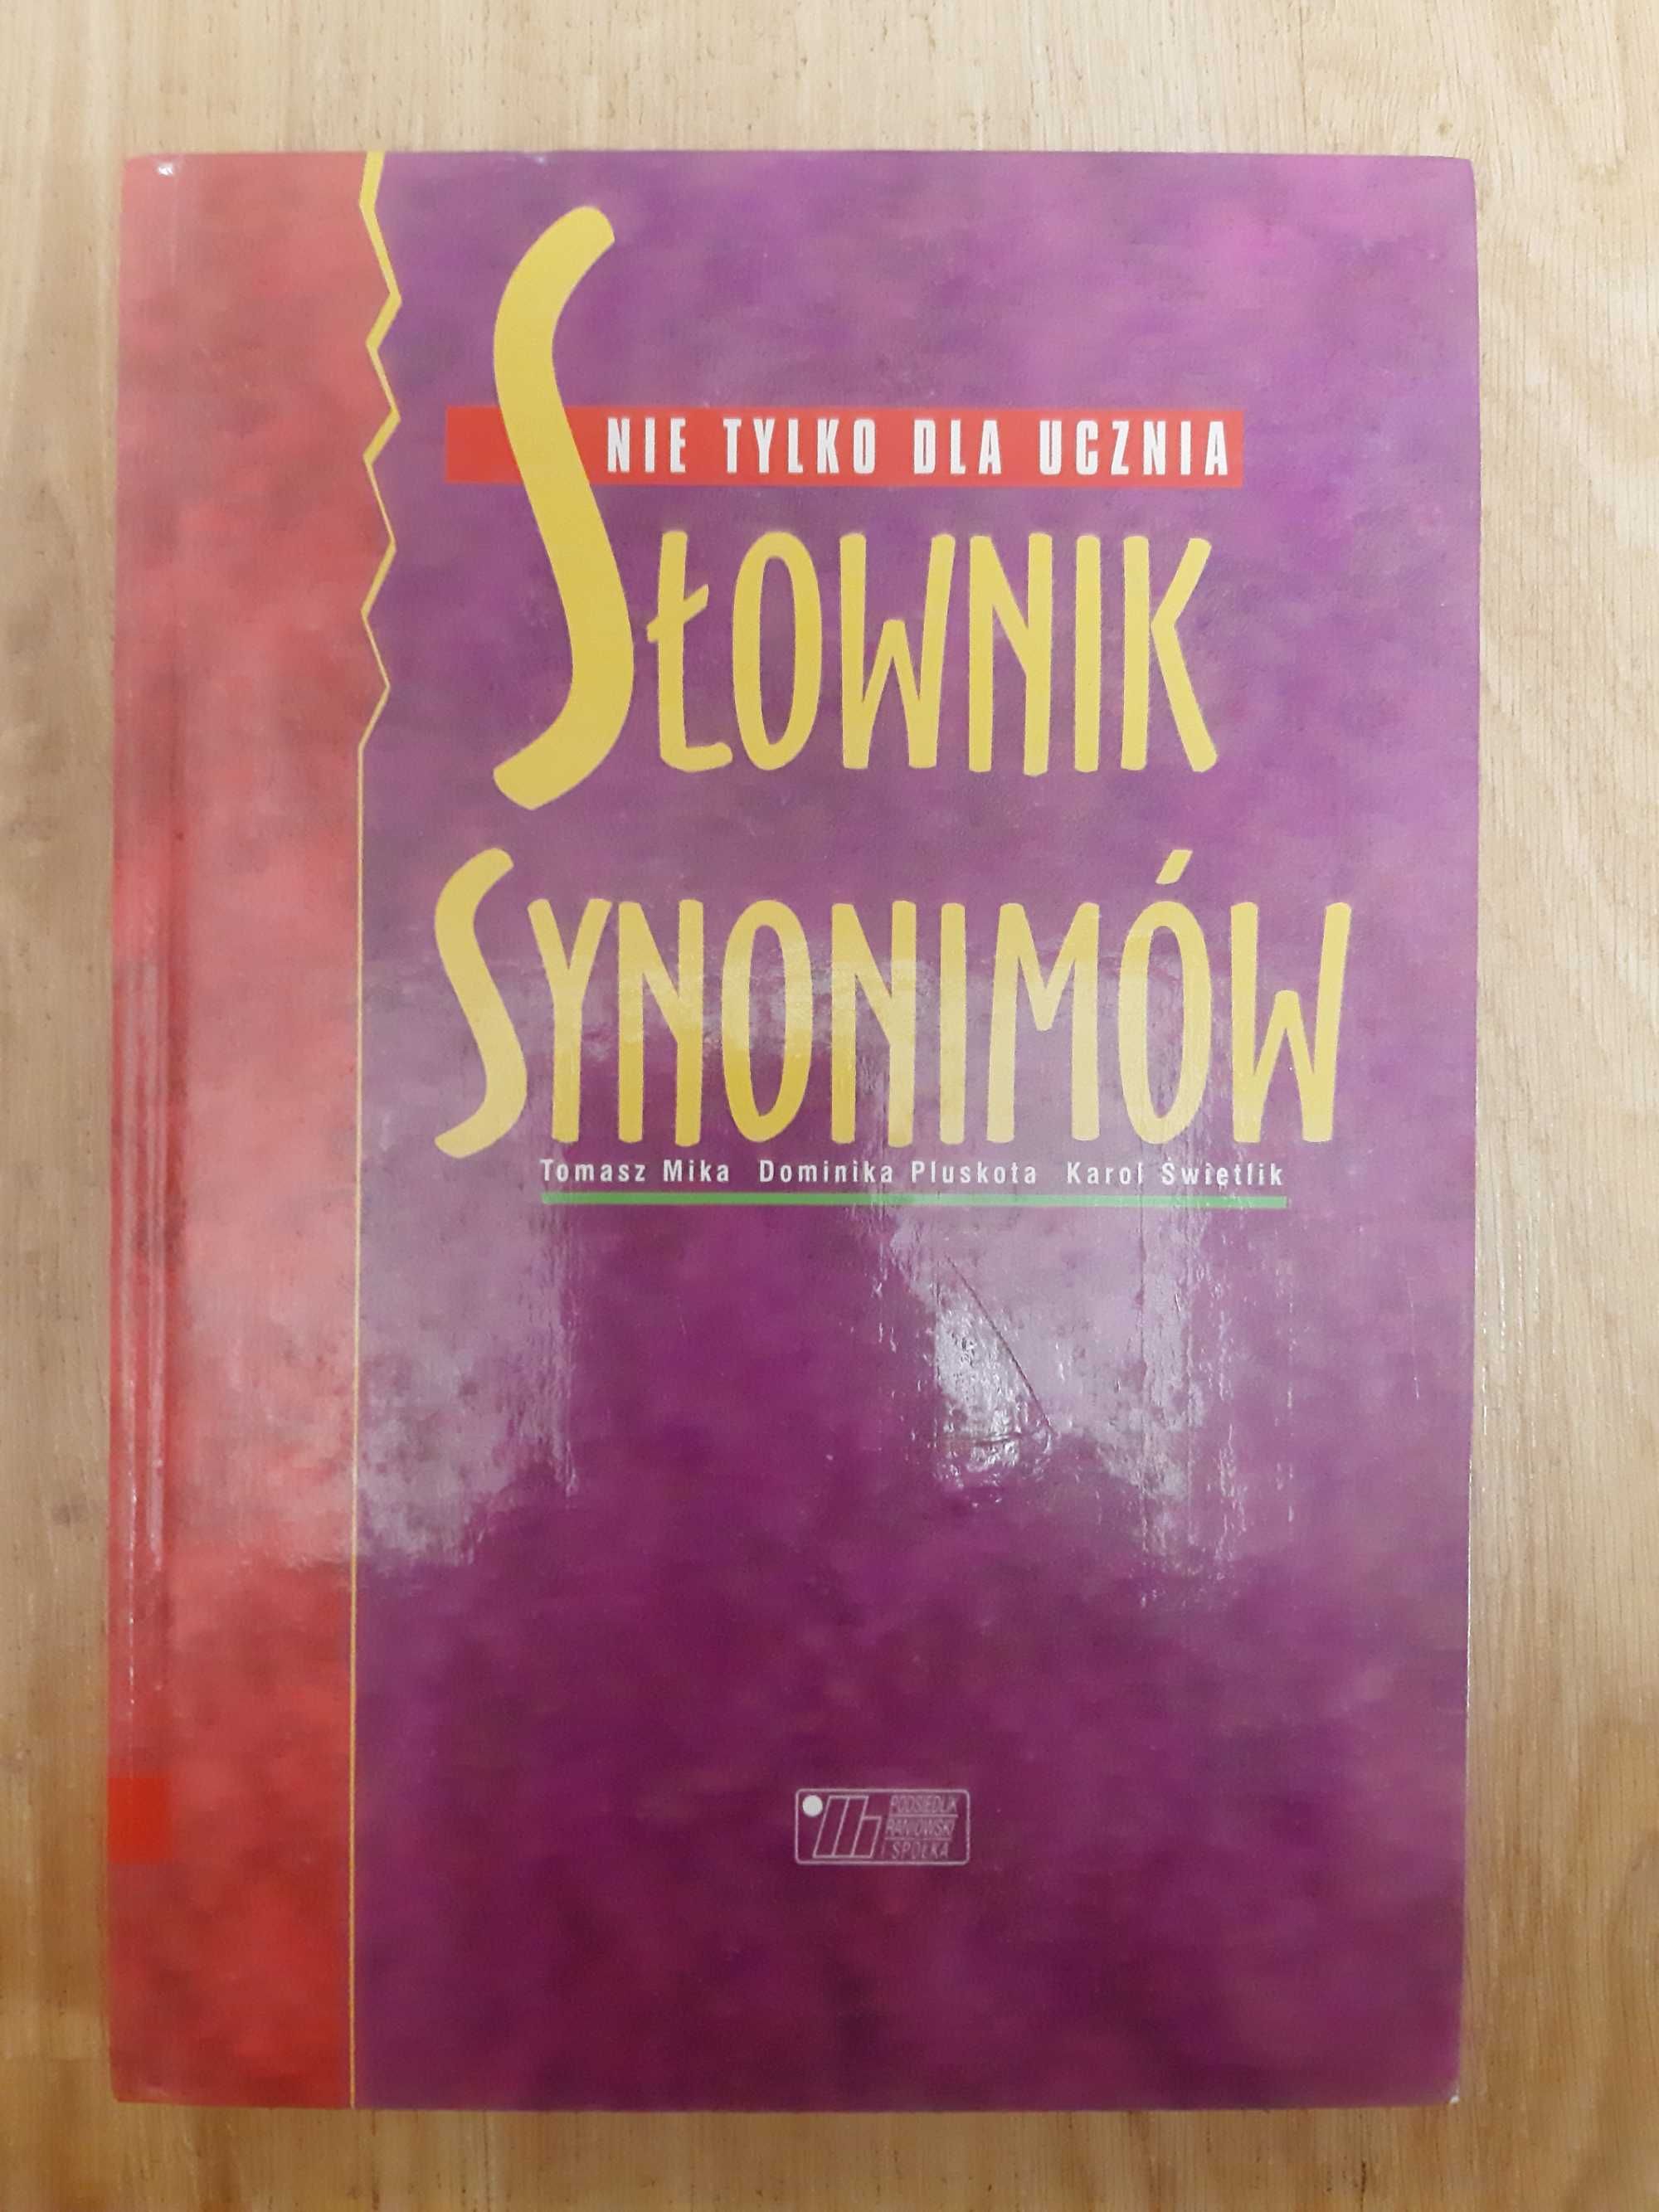 Słownik synonimów Nie tylko dla ucznia Mika Tomasz